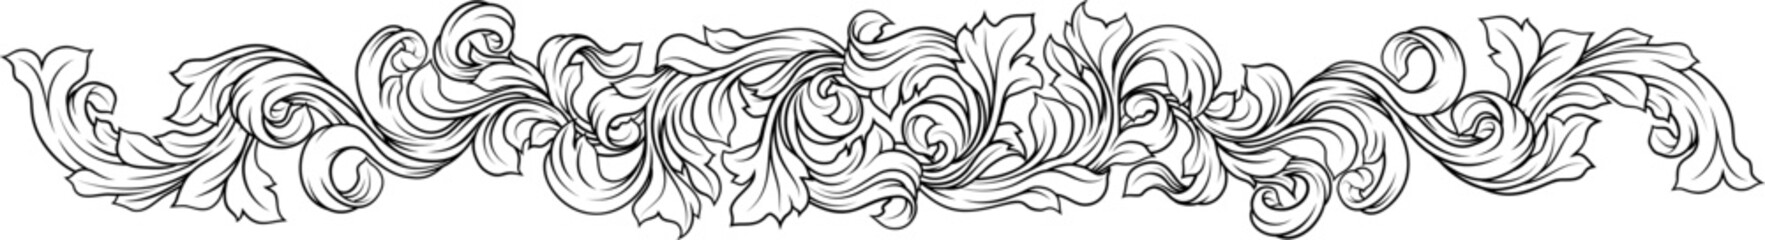 Sticker - A filigree heraldic heraldry pattern band vine deign element